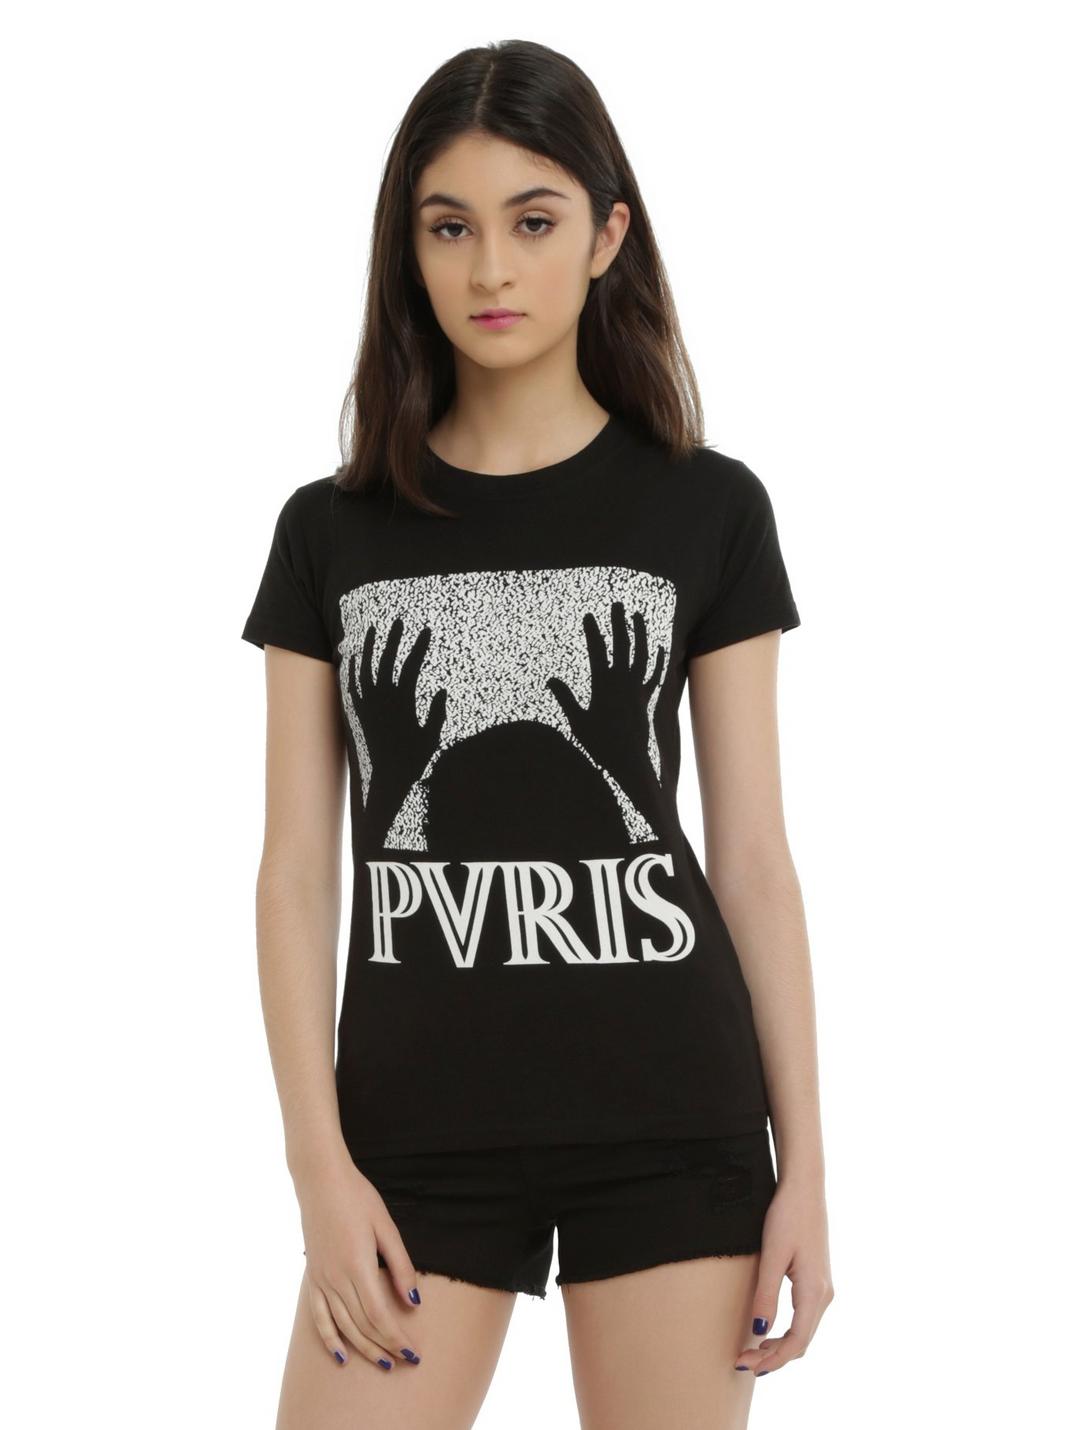 New Official PVRIS WHITE NOISE Girlie T-Shirt